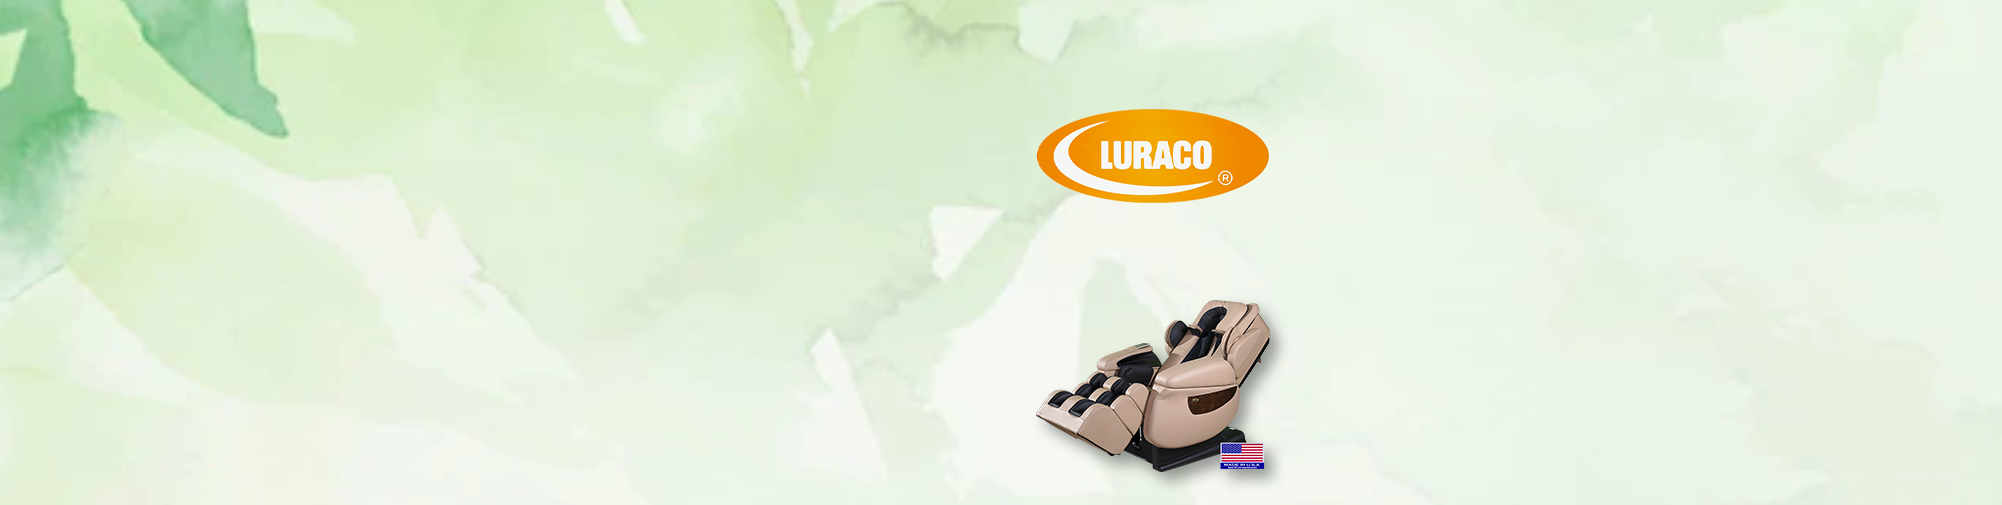 Luraco Technologies, fotelje za zdravlje | Svijet stolica za masažu